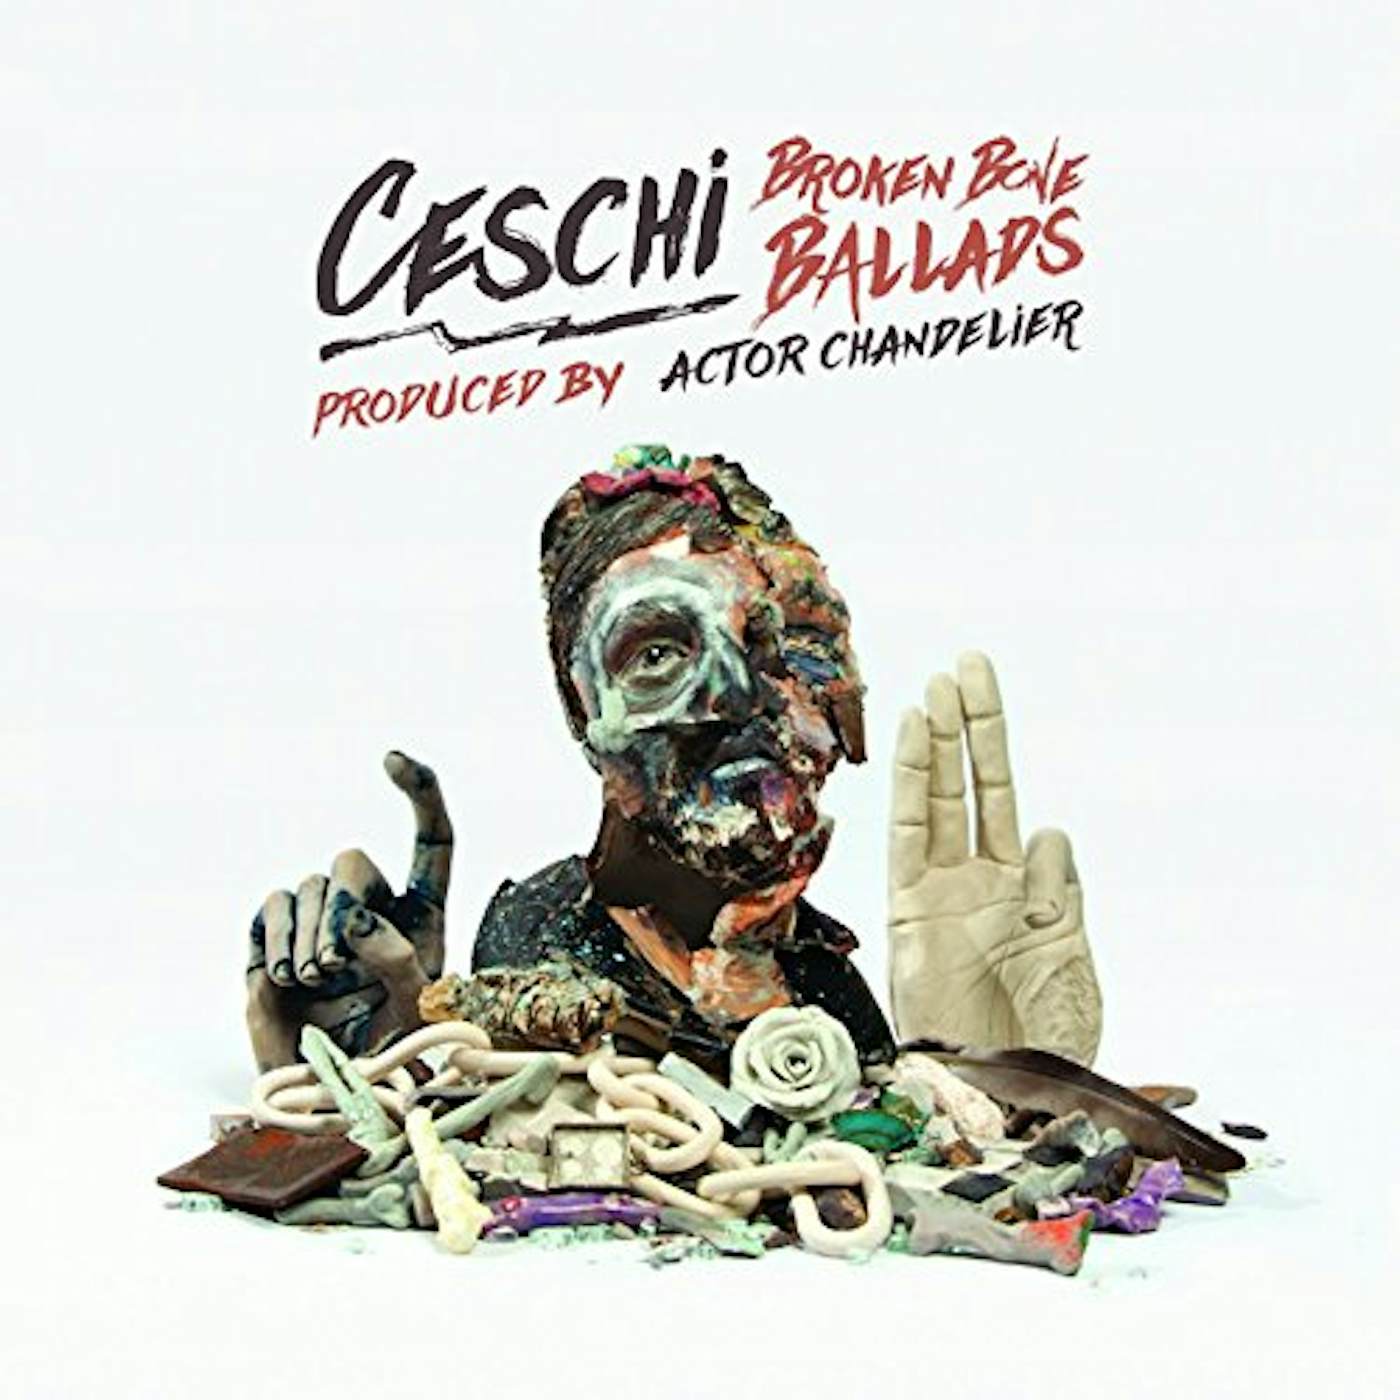 Ceschi BROKEN BONE BALLADS CD